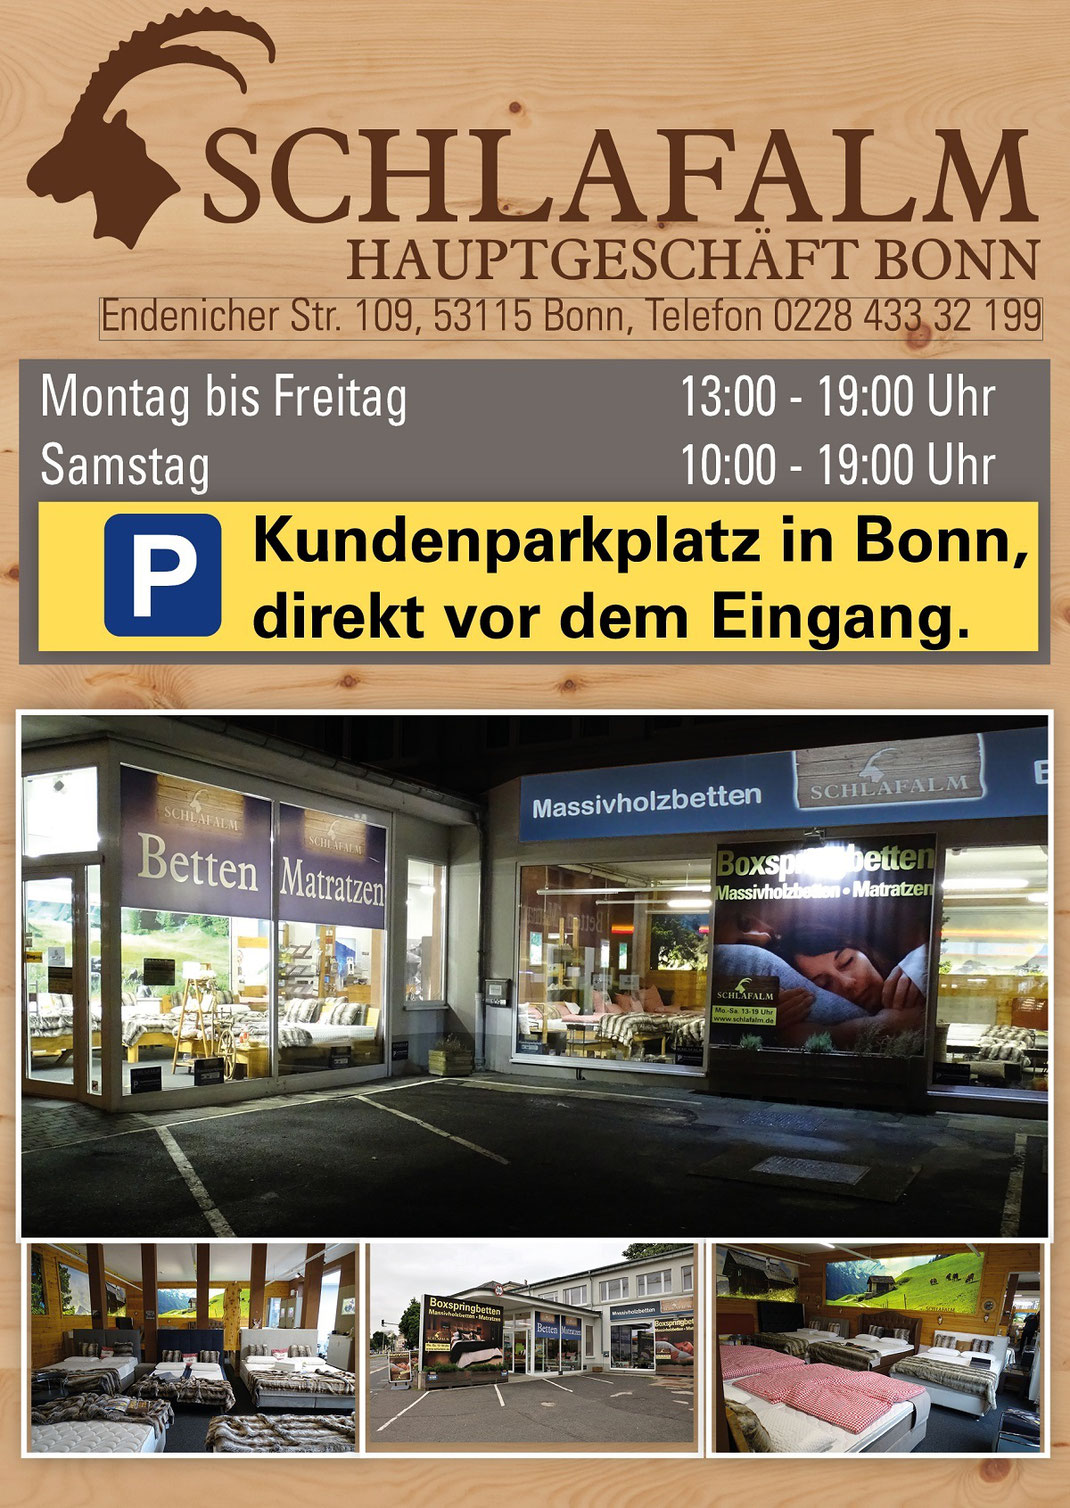 Ein Bild für Kunden aus Bergheim, das Text, Matratzen, Taschenfederkernmatratzen, Kaltschaummatratzen, extra feste Matratzen enthält.